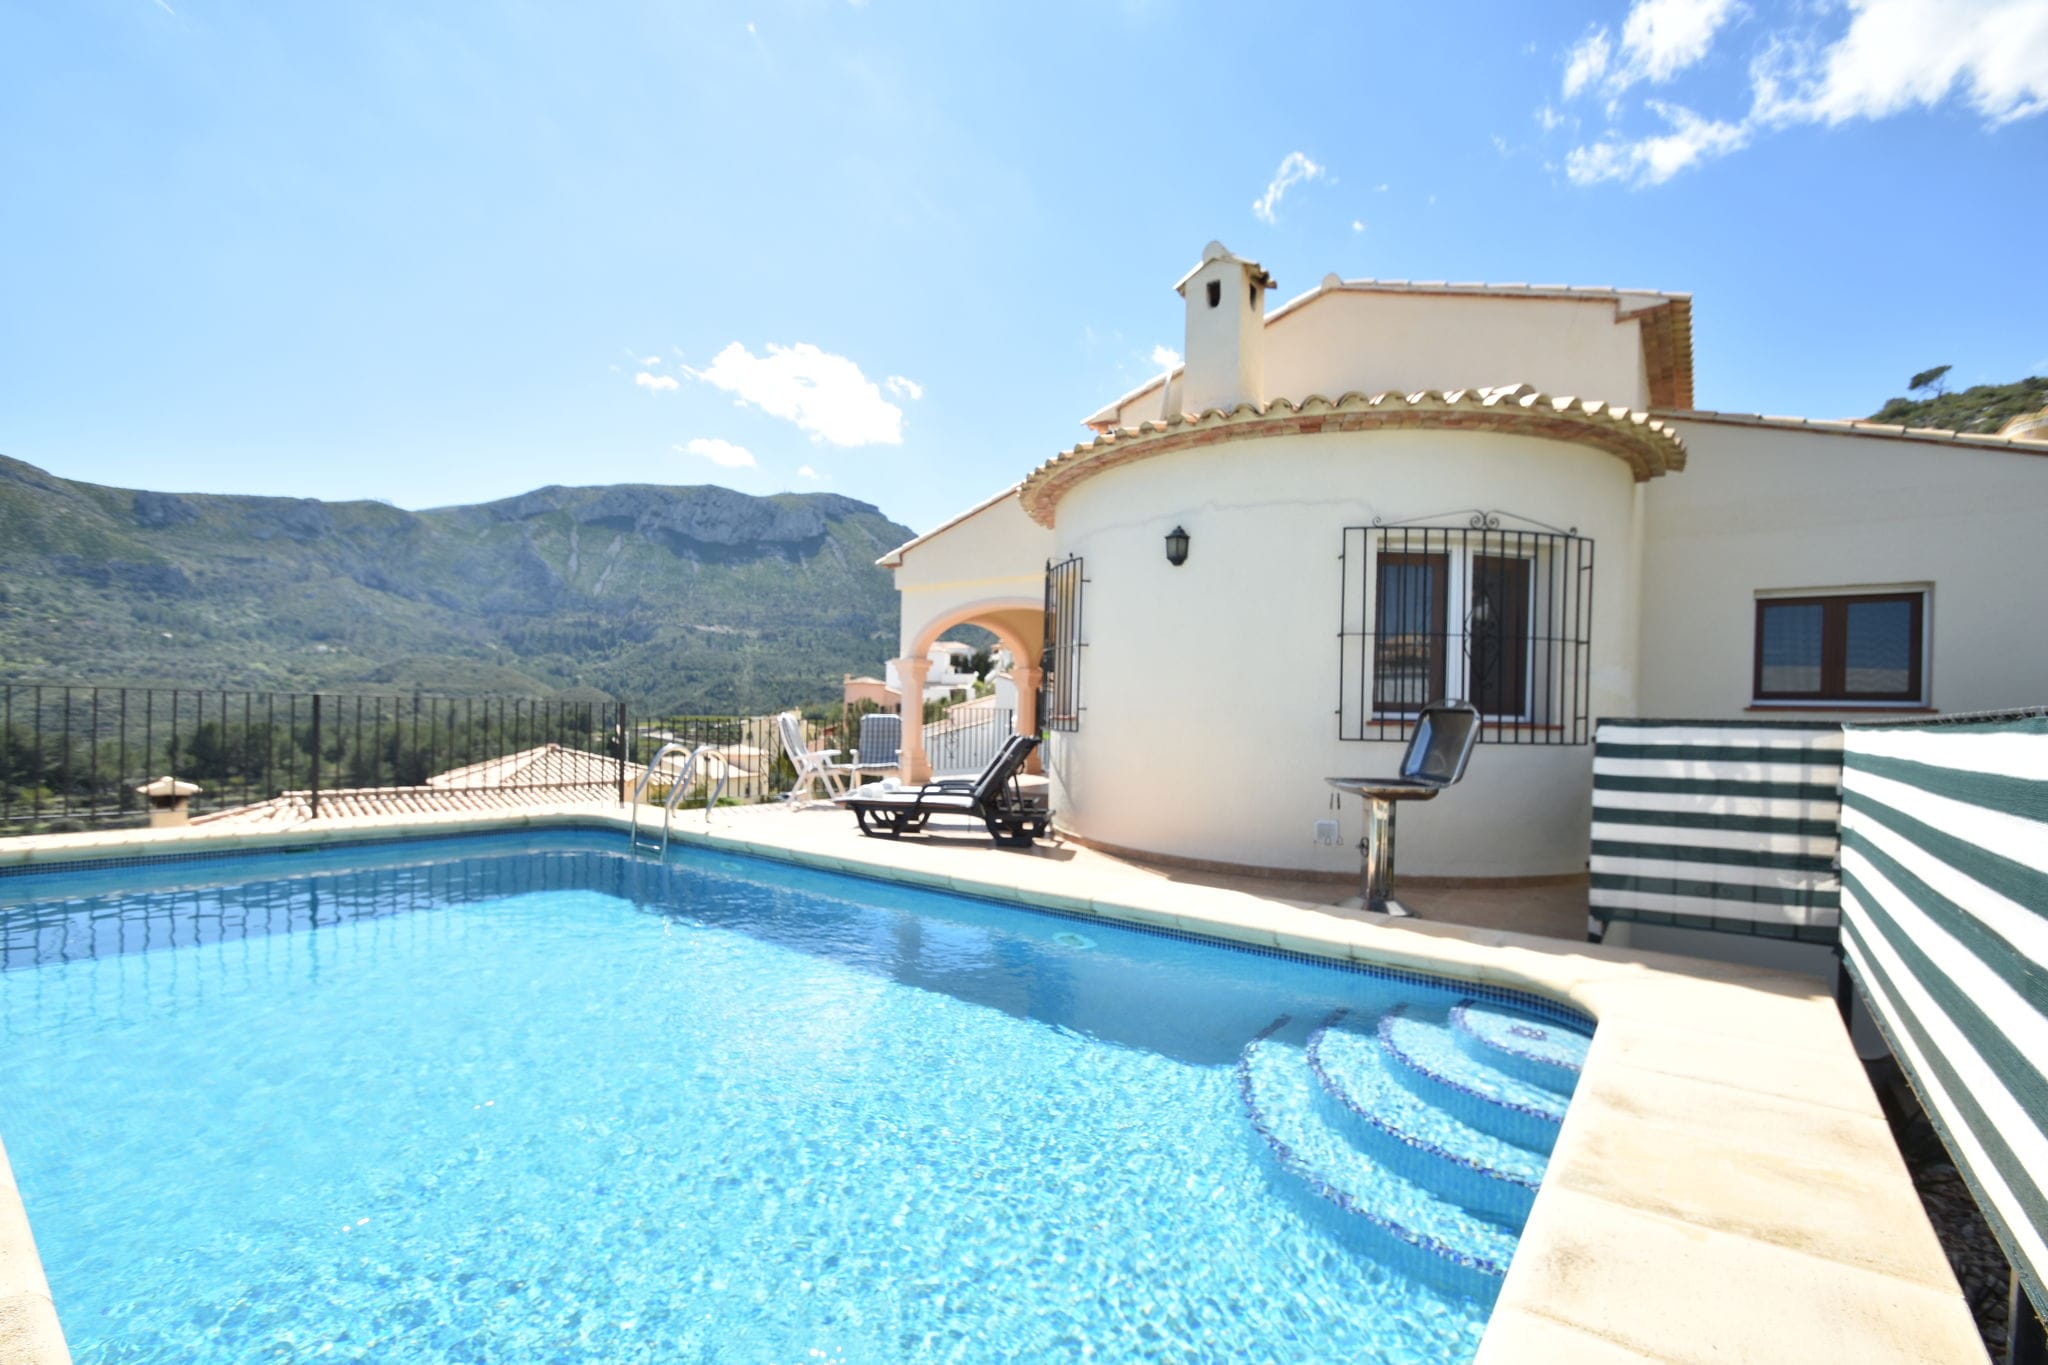 Freistehende Villa in ruhiger Lage mit privatem Pool und Panoramablick